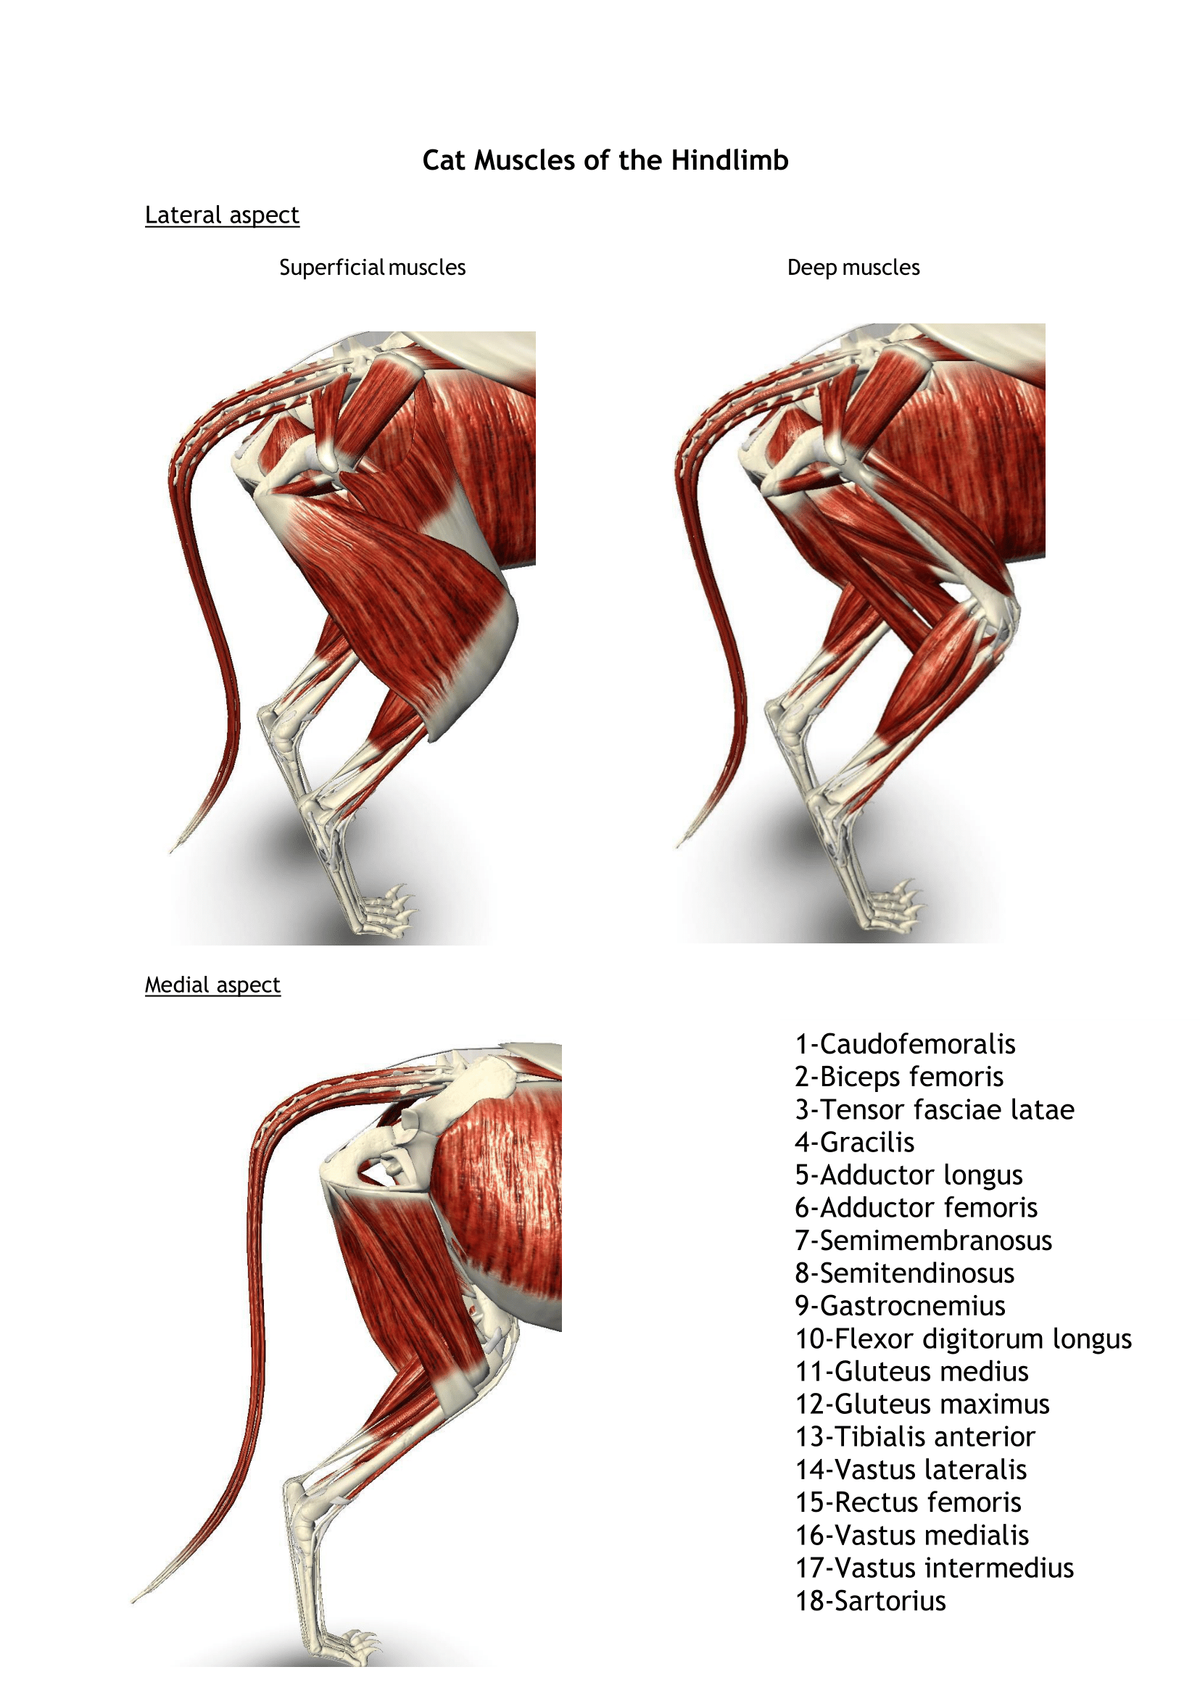 Cat Muscles of the Hindlimb
Lateral aspect
Superficial muscles
Deep muscles
Medial aspect
1-Caudofemoralis
2-Biceps femoris
3-Tensor fasciae latae
4-Gracilis
5-Adductor longus
6-Adductor femoris
7-Semimembranosus
8-Semitendinosus
9-Gastrocnemius
10-Flexor digitorum longus
11-Gluteus medius
12-Gluteus maximus
13-Tibialis anterior
14-Vastus lateralis
15-Rectus femoris
16-Vastus medialis
17-Vastus intermedius
18-Sartorius
